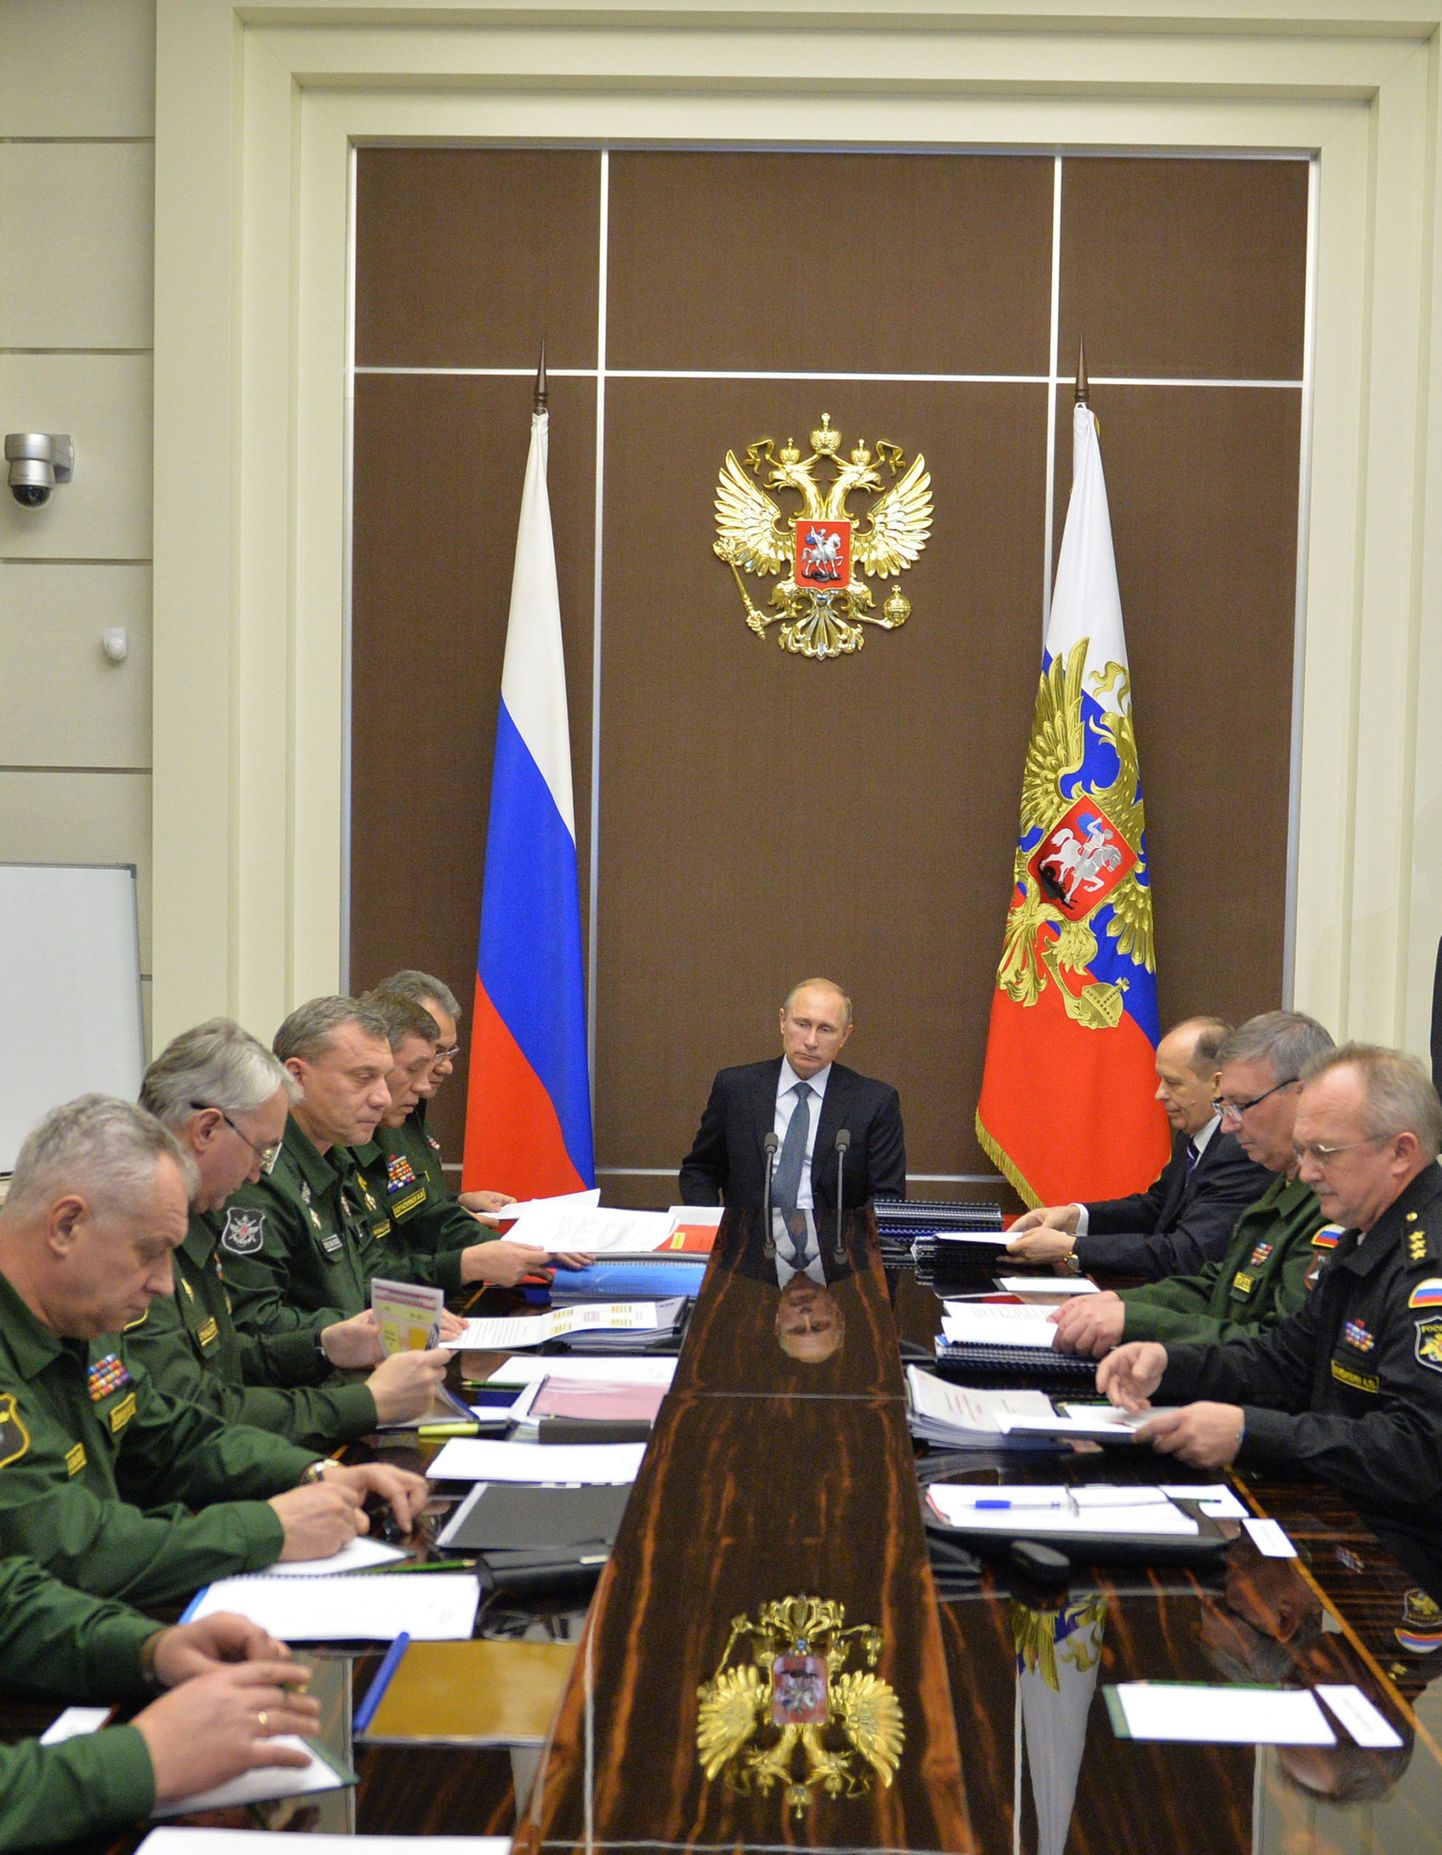 Venemaa president Vladimir Putin ja sõjaväe juhtkond Sotšis